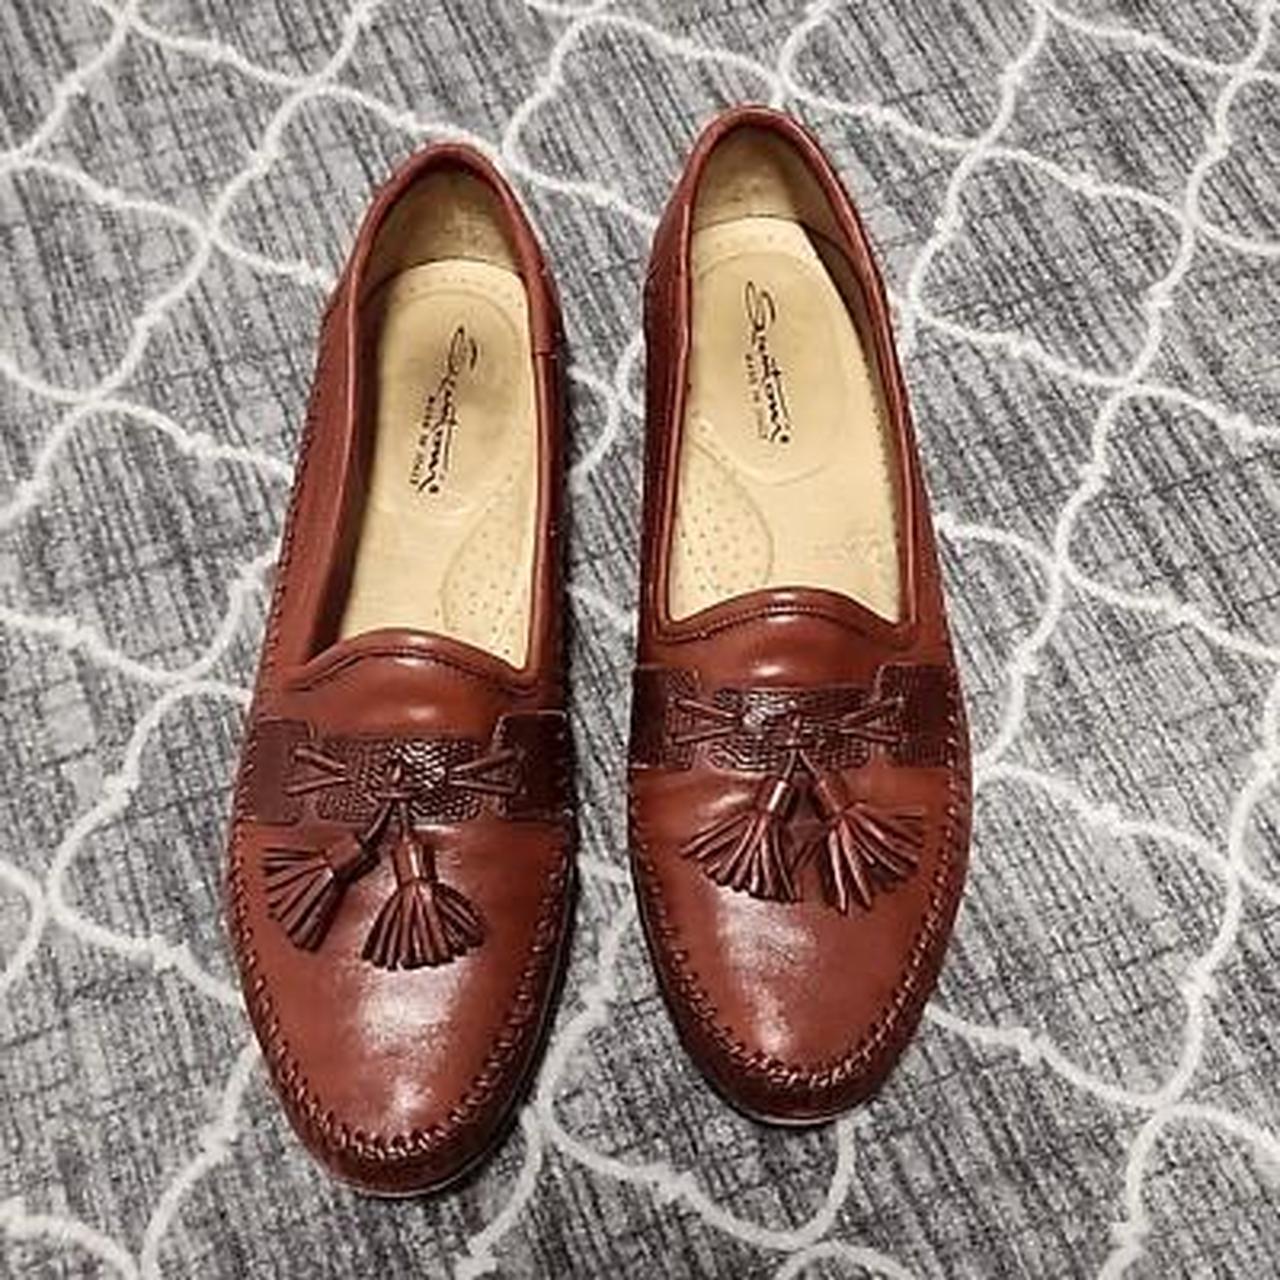 Santoni Aspen Brown Leather Tassel Loafers Size... - Depop